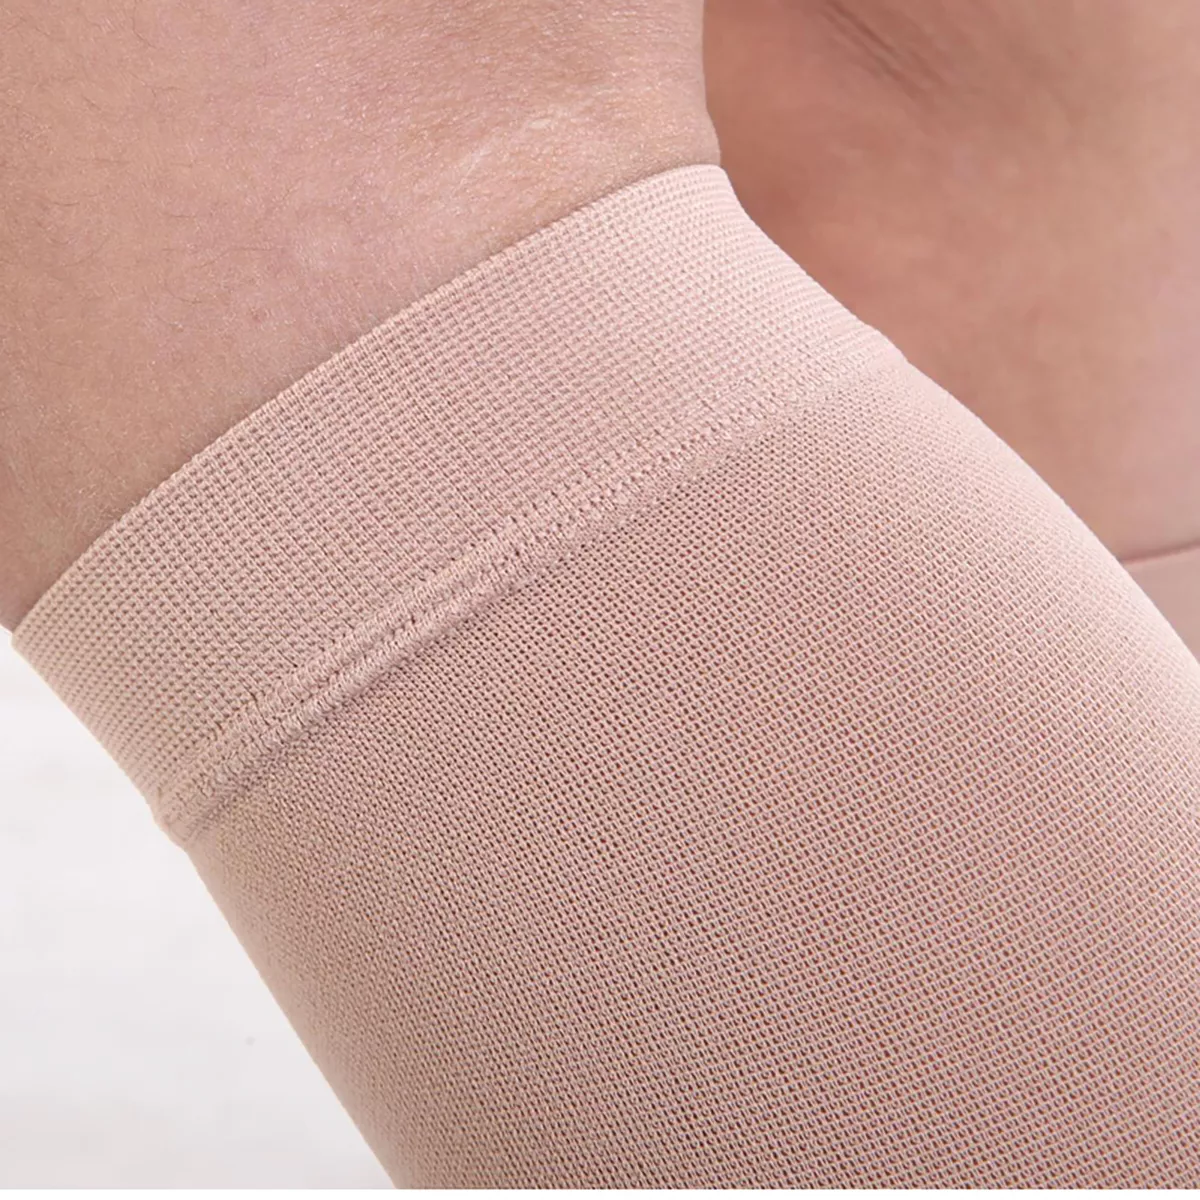 Varcoh ® 8-15 mmHg Men Knee High Open Toe Compression Socks Beige